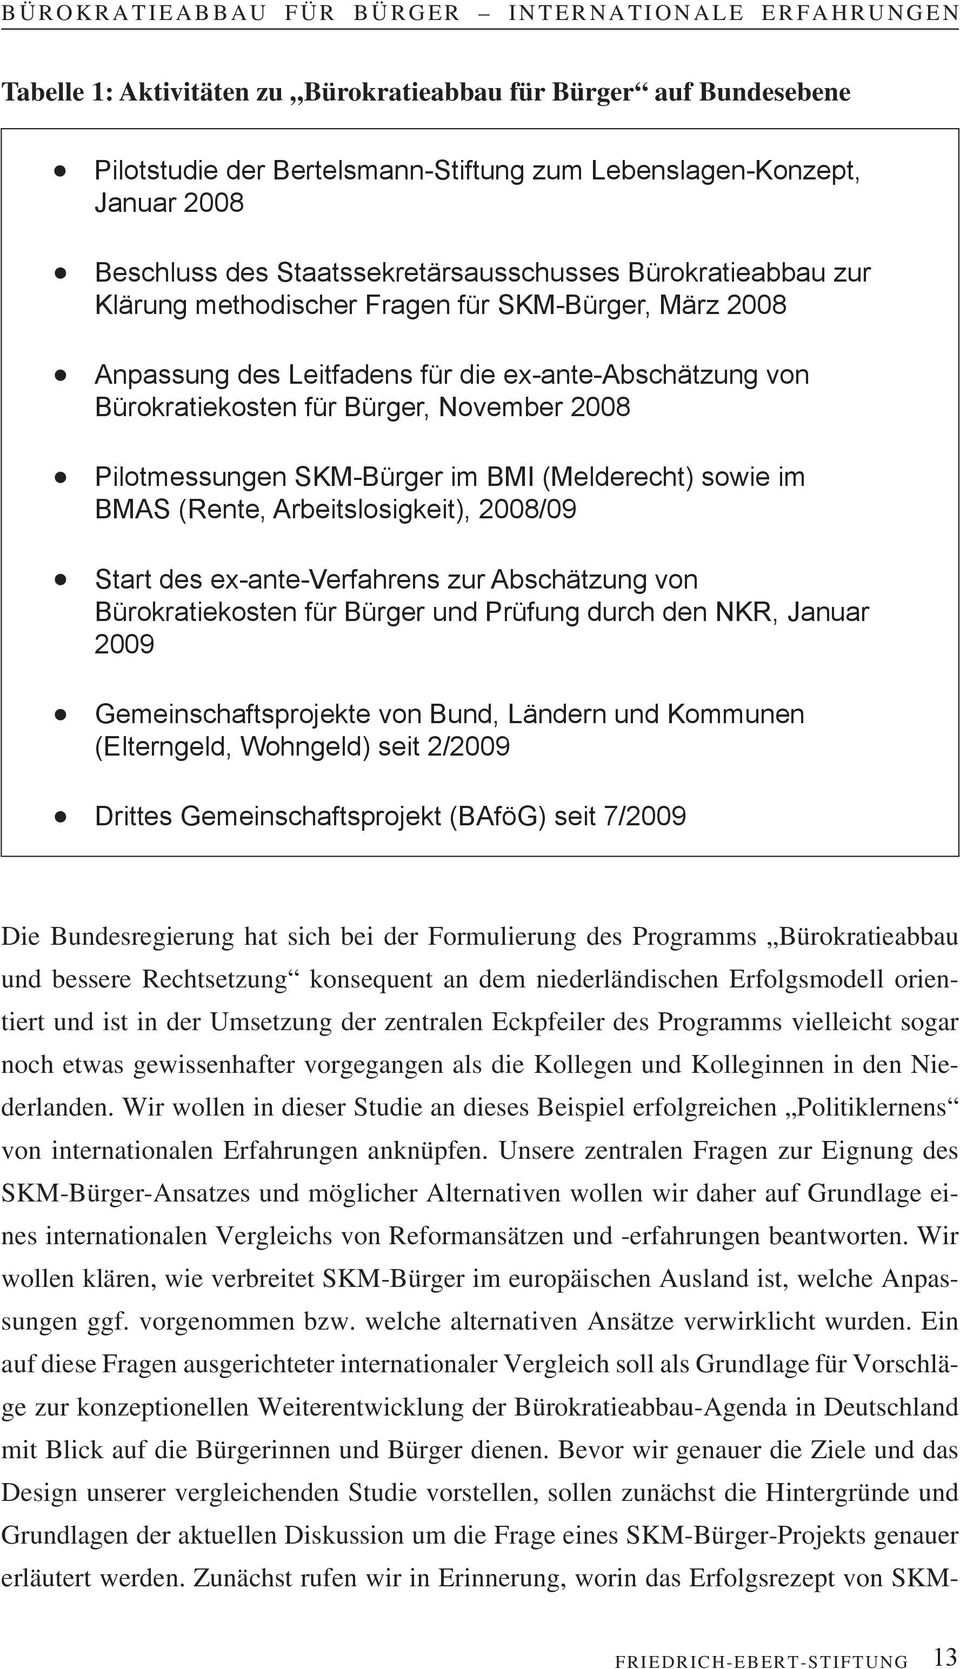 (Melderecht) sowie im BMAS (Rente, Arbeitslosigkeit), 2008/09 Start des ex-ante-verfahrens zur Abschätzung von Bürokratiekosten für Bürger und Prüfung durch den NKR, Januar 2009 Gemeinschaftsprojekte